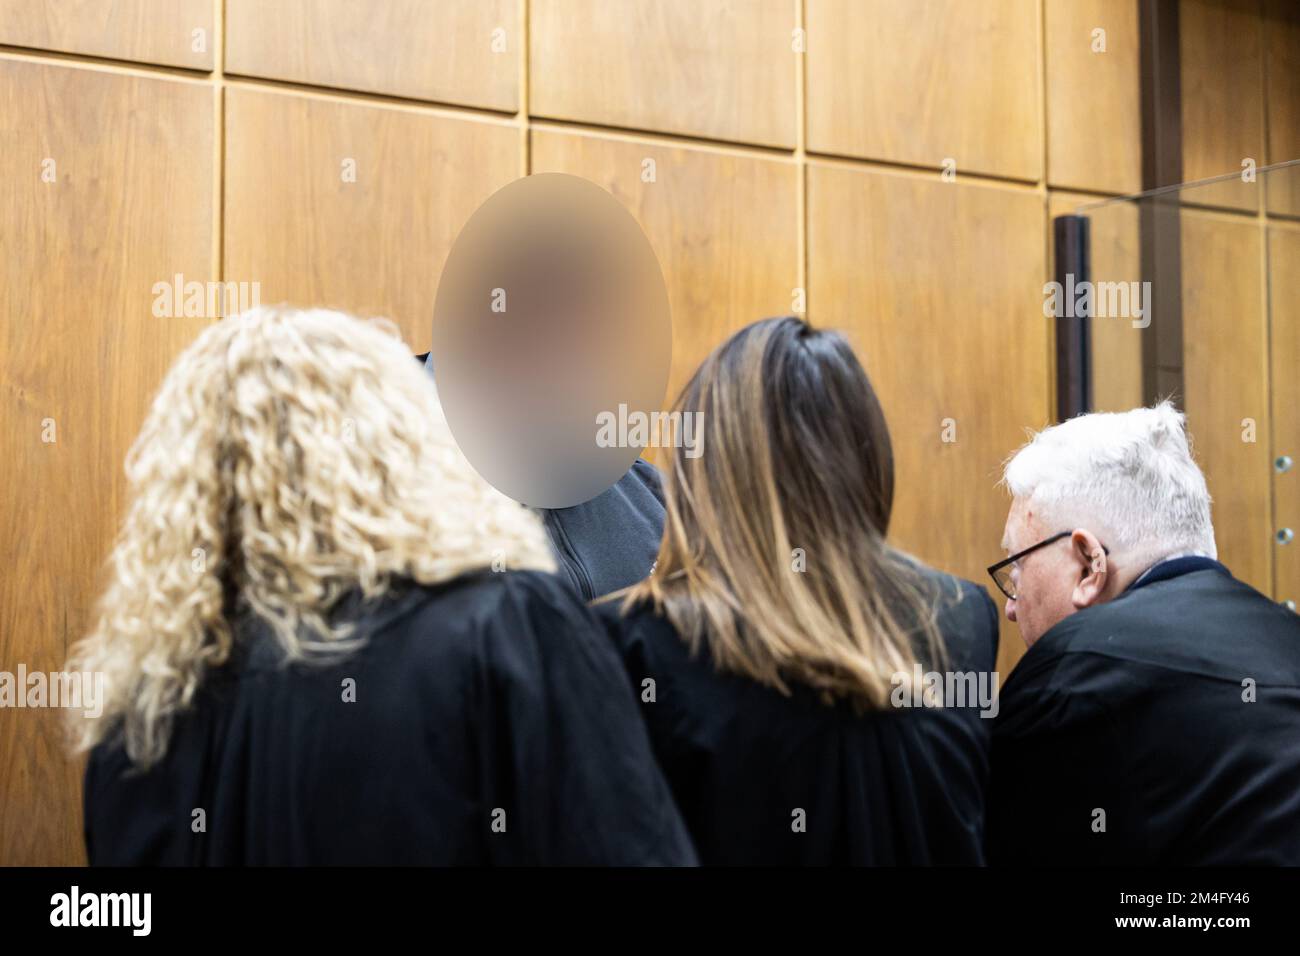 21 dicembre 2022, bassa Sassonia, Hannover: L'imputato (2nd da sinistra) parla con i suoi avvocati Fritz Willig (r), Yana Tchelpanova (2nd da destra) e Silke Willig (l) in un tribunale della Corte Regionale di Hannover prima dell'inizio del processo. L'imputato è accusato di aver ucciso un uomo con diverse ferite da coltello nella sua casa a Wennigsen nel giugno 2022. Quando la moglie dell'uomo ucciso incontrò l'imputato poco dopo il crimine, presumibilmente la uccise anche con diversi pugnali di coltello per coprire il suo precedente crimine. Foto: Michael Matthey/dpa - ATTENZIONE: La(e) persona(e) è stata pixelata per le reas legali Foto Stock